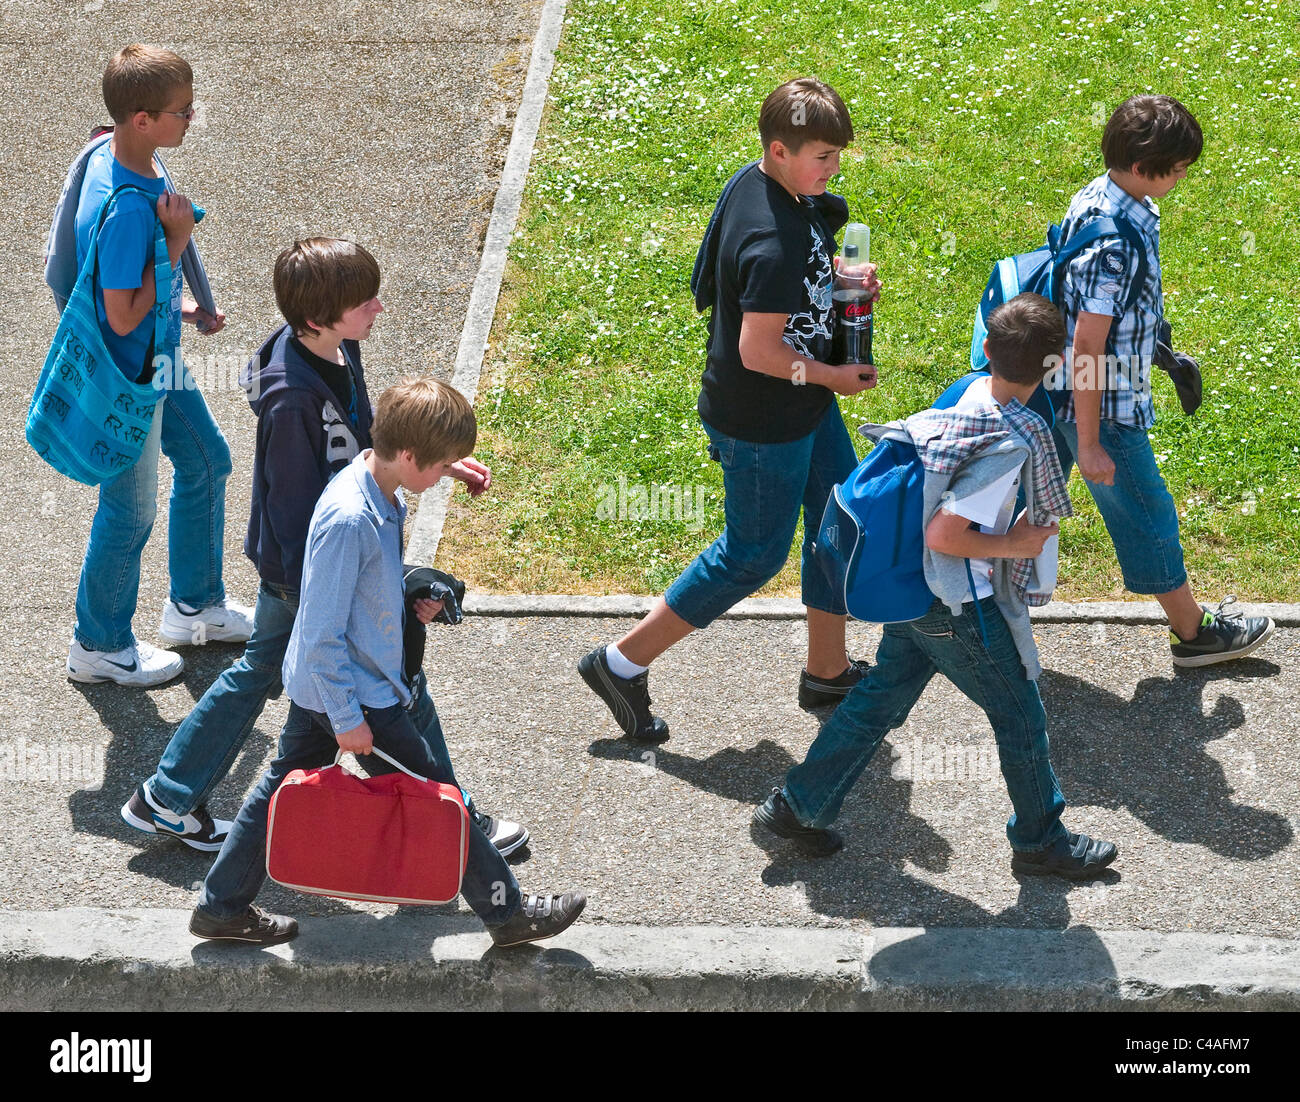 Groupe d'enfants français à l'école à pied - Indre-et-Loire, France. Banque D'Images